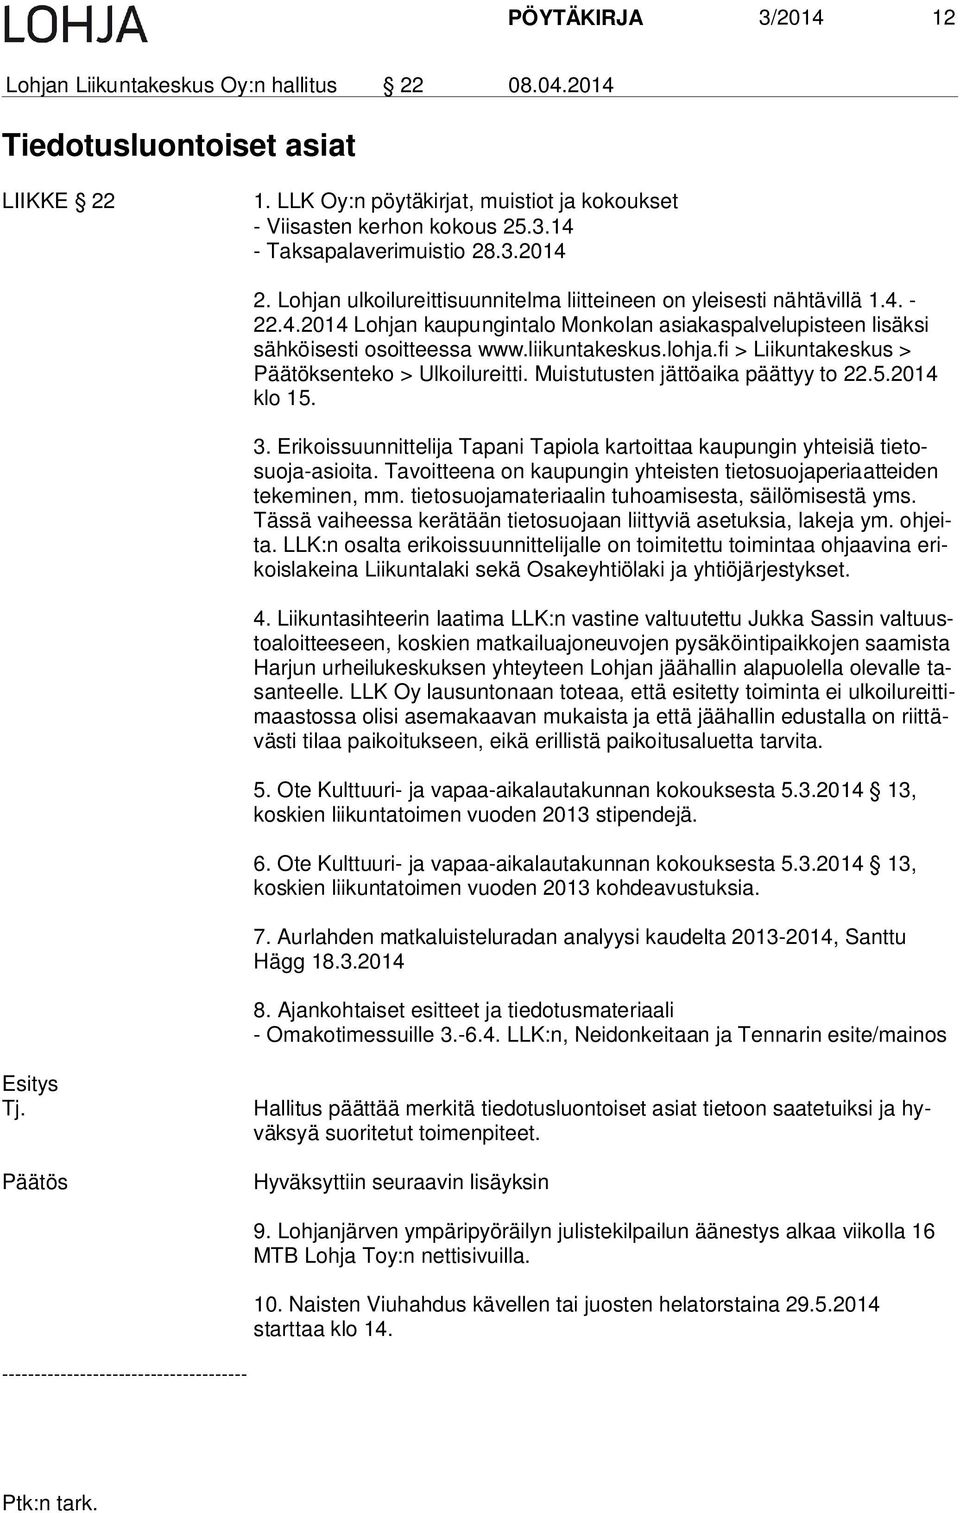 liikuntakeskus.lohja.fi > Liikuntakeskus > Pää tök sen te ko > Ulkoilureitti. Muistutusten jättöaika päättyy to 22.5.2014 klo 15. 3.